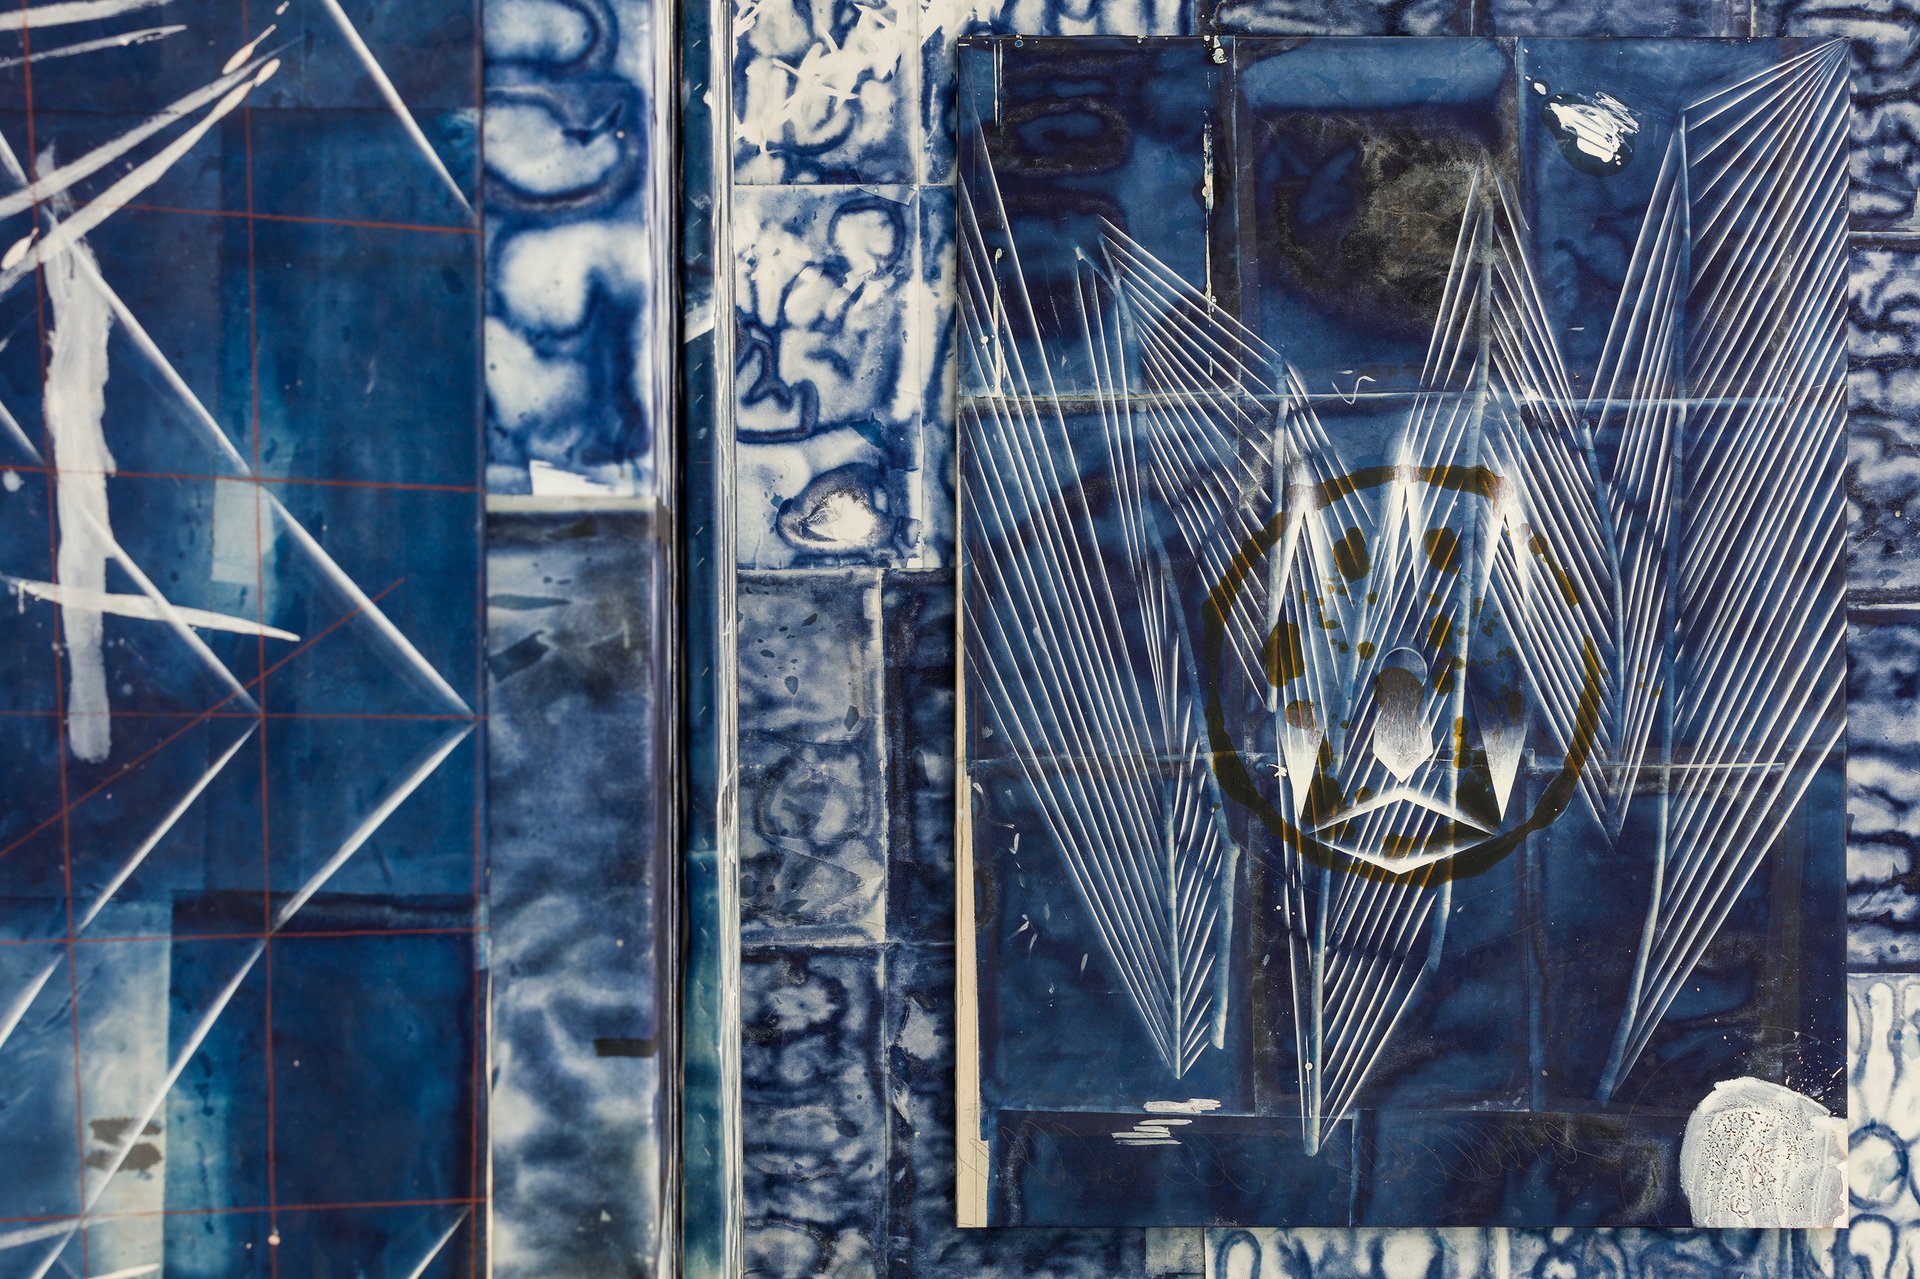 Tillman KaiserThis, 2021Oil on cyanotype on paper &amp; canvas200 x 150 cm